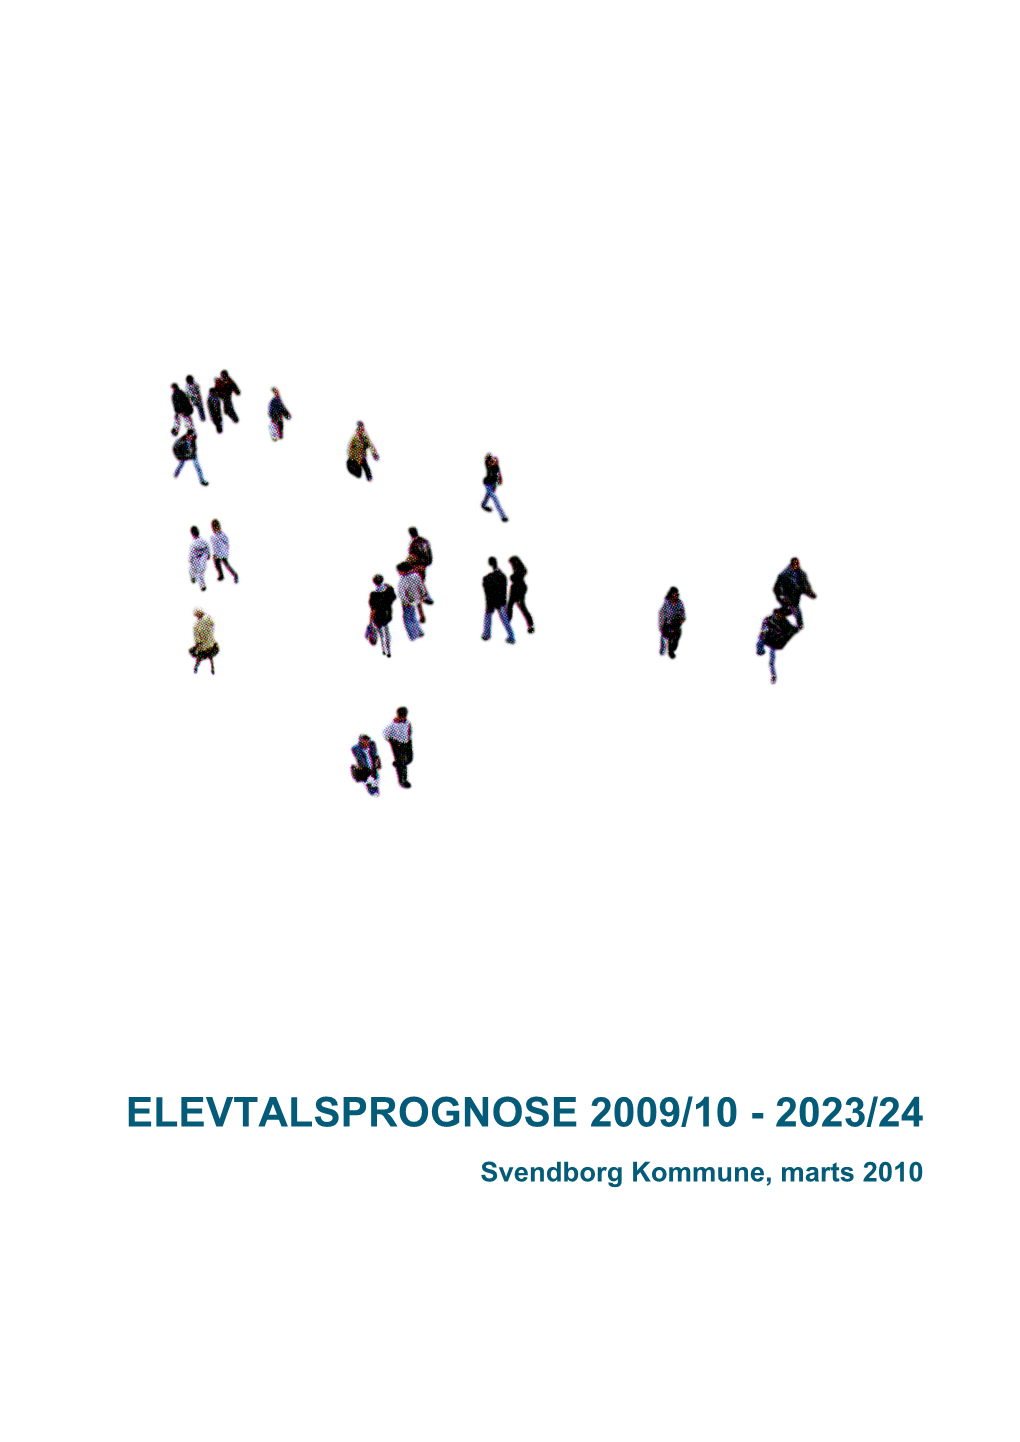 ELEVTALSPROGNOSE 2009/10 - 2023/24 Svendborg Kommune, Marts 2010